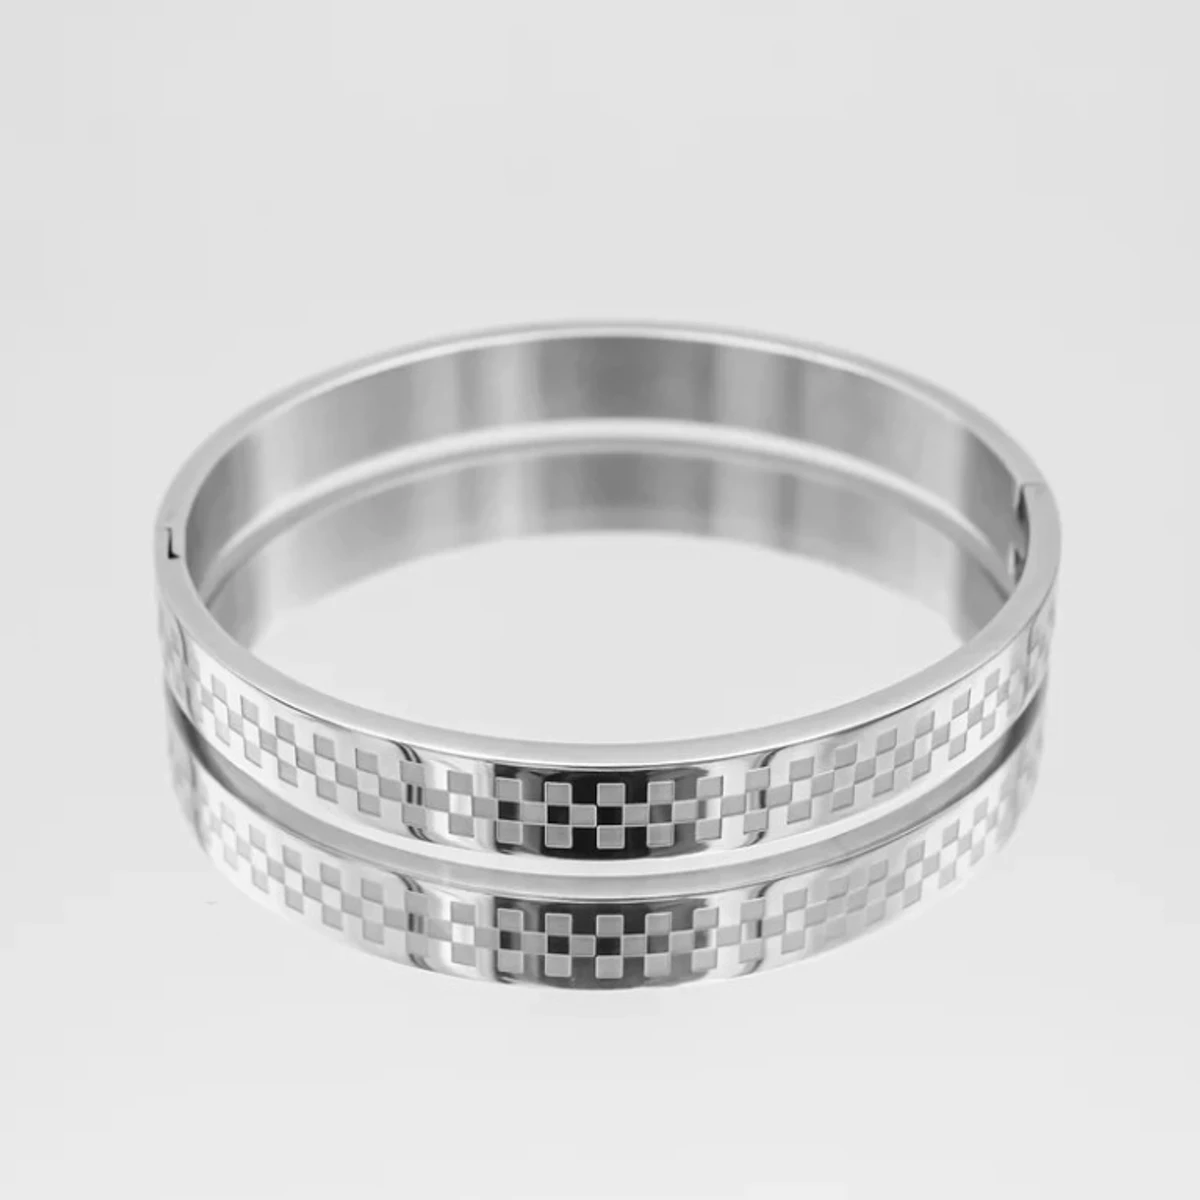 Silver Free Size Stainless Steel Trandy Kadaa Bracelet For Men